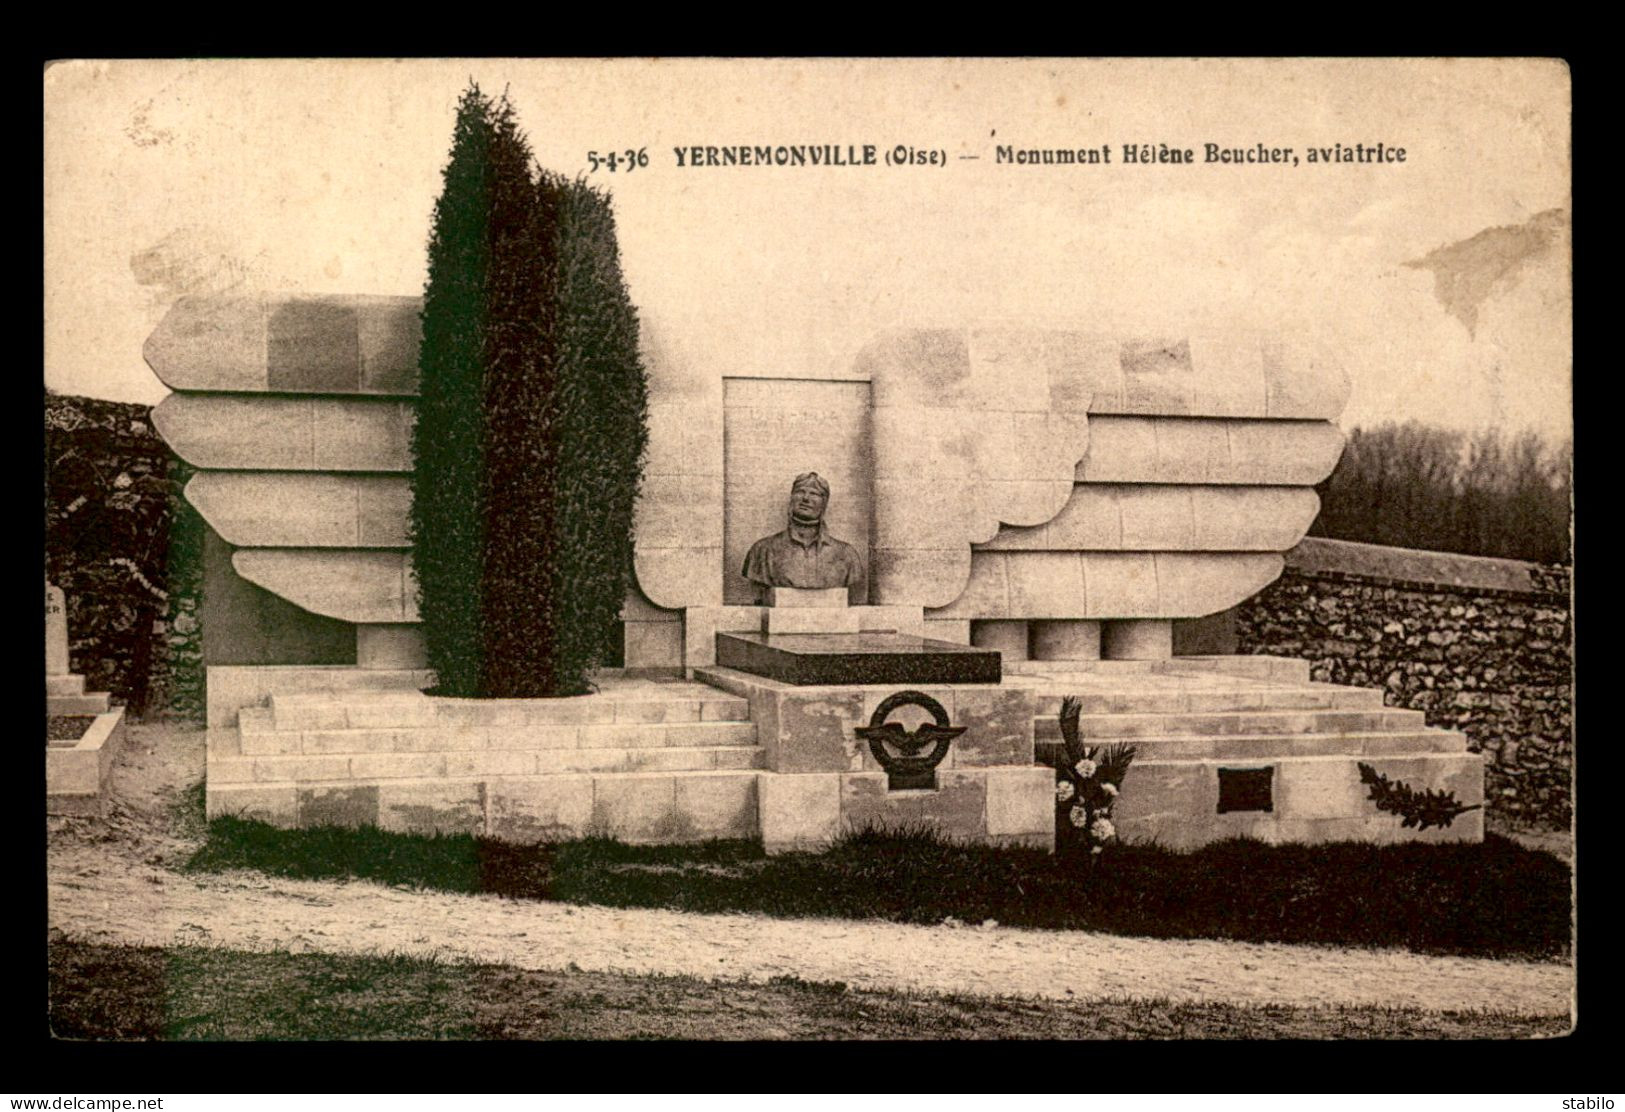 AVIATION - YERNEMONVILLE - MONUMENT D'HELENE BOUCHER - Piloten